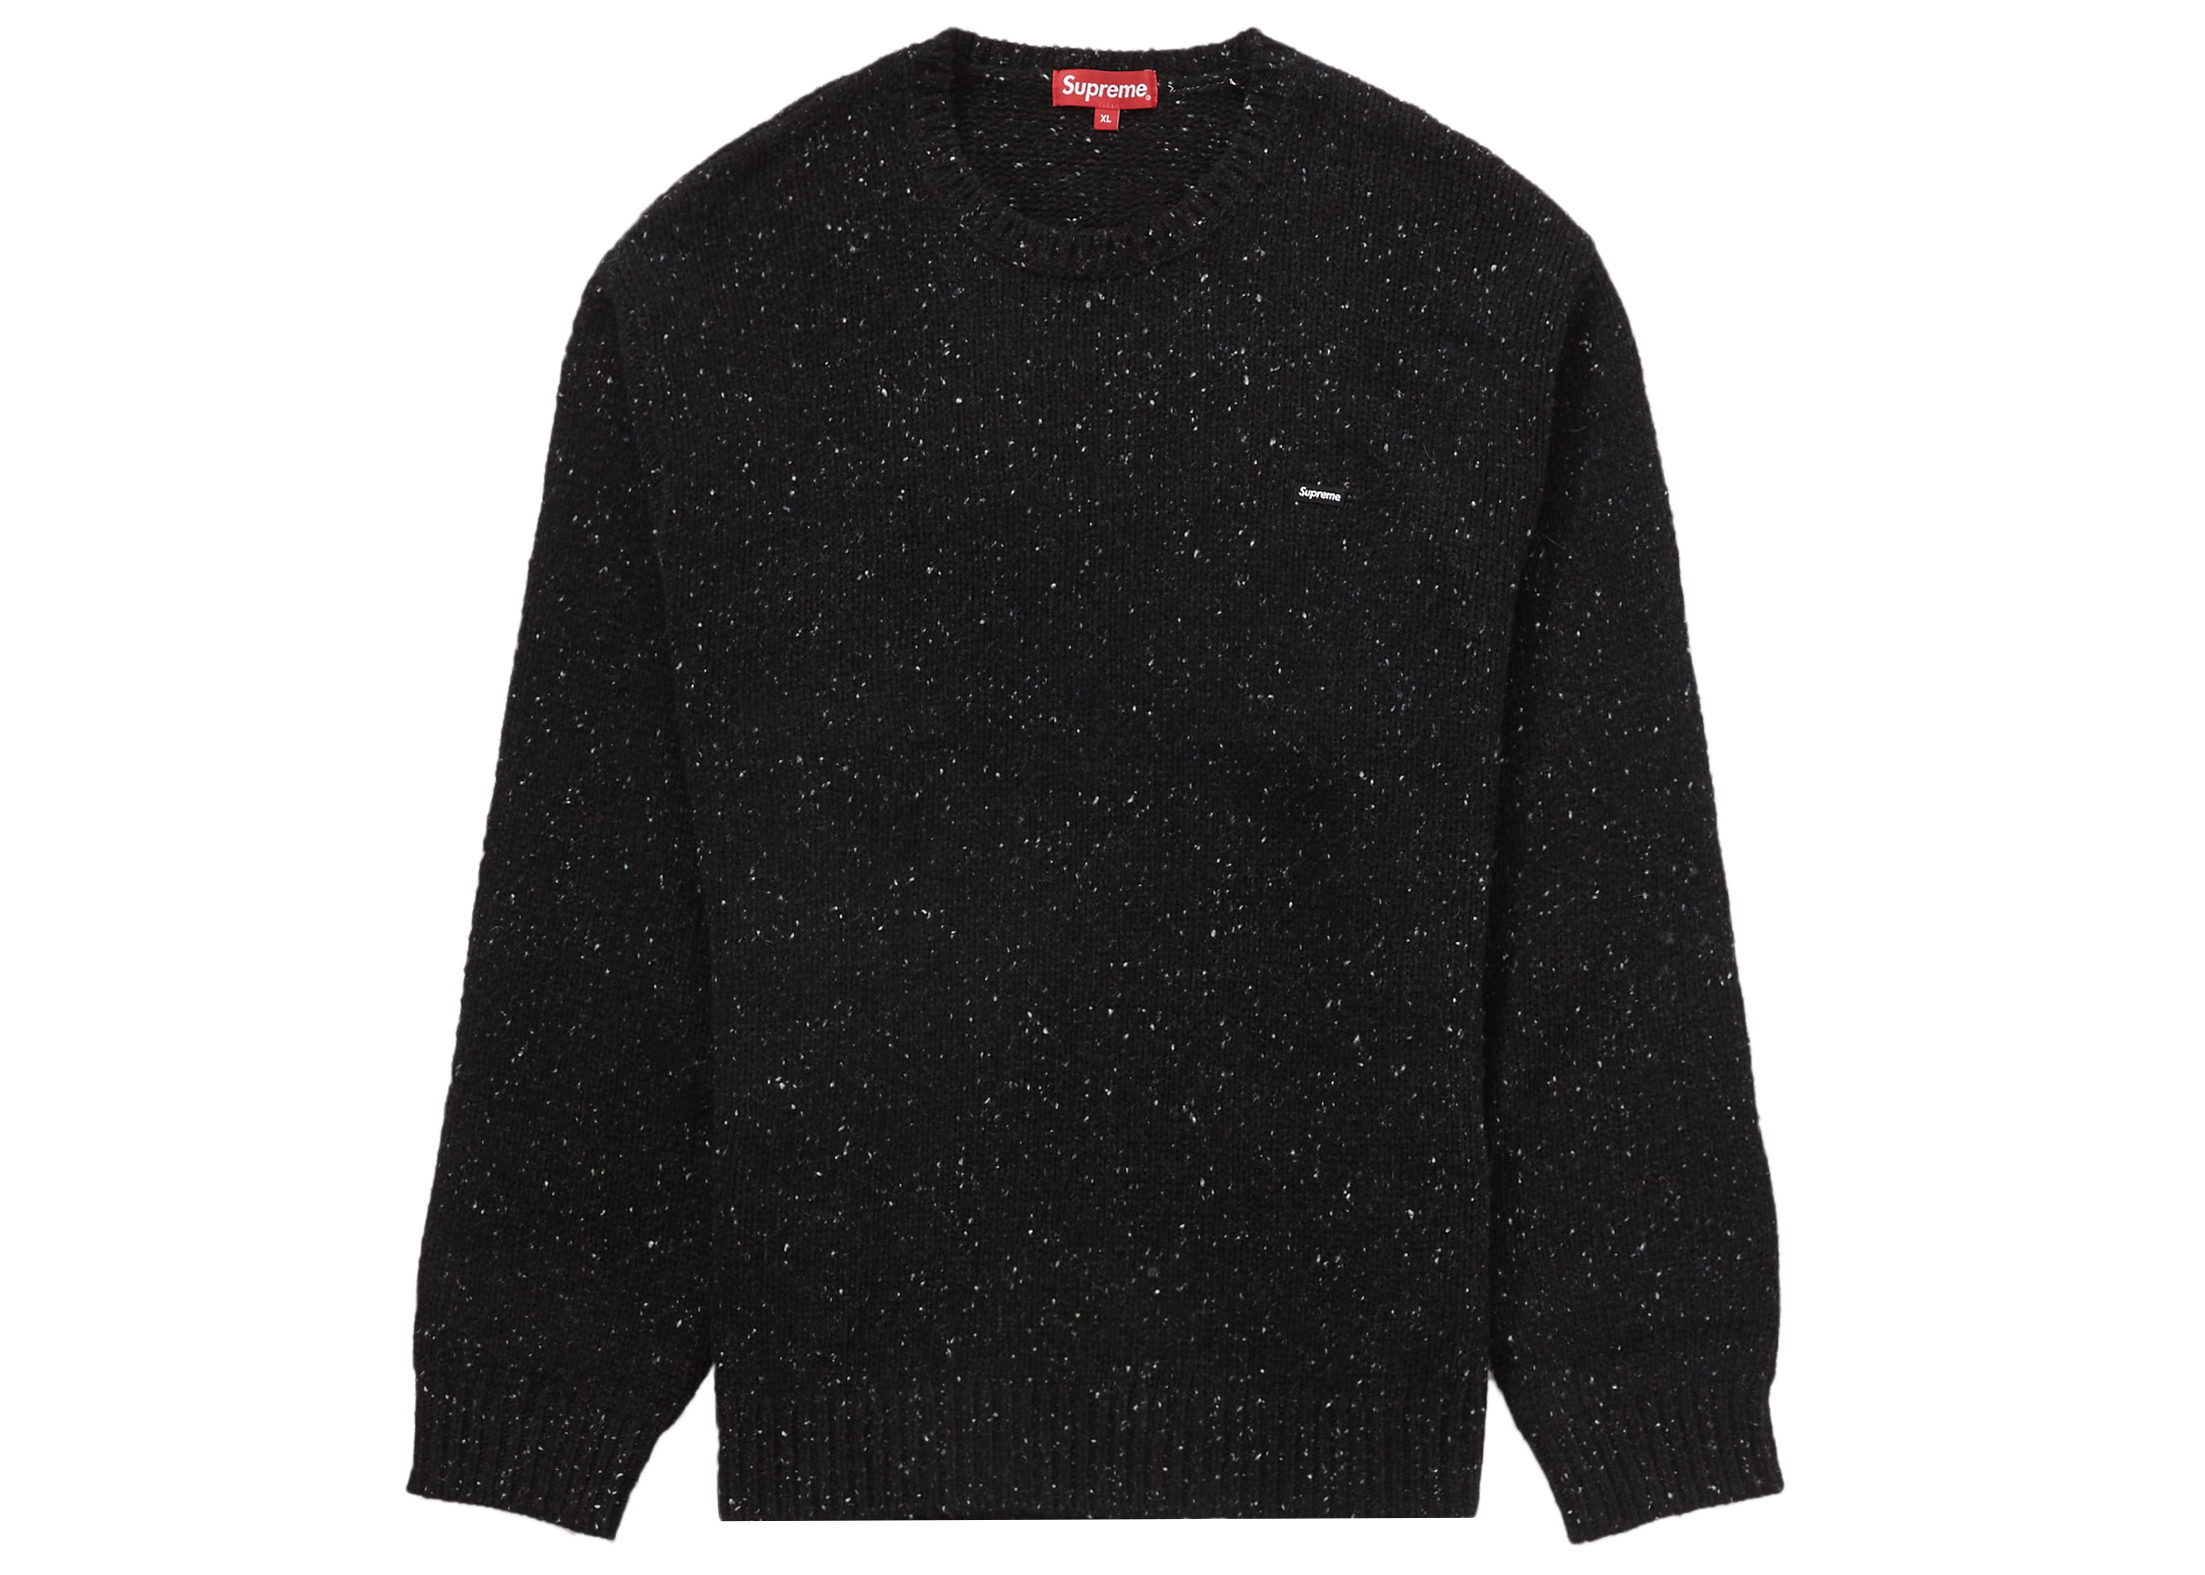 Supreme Small Box Speckle Sweater Black - FW22 - US